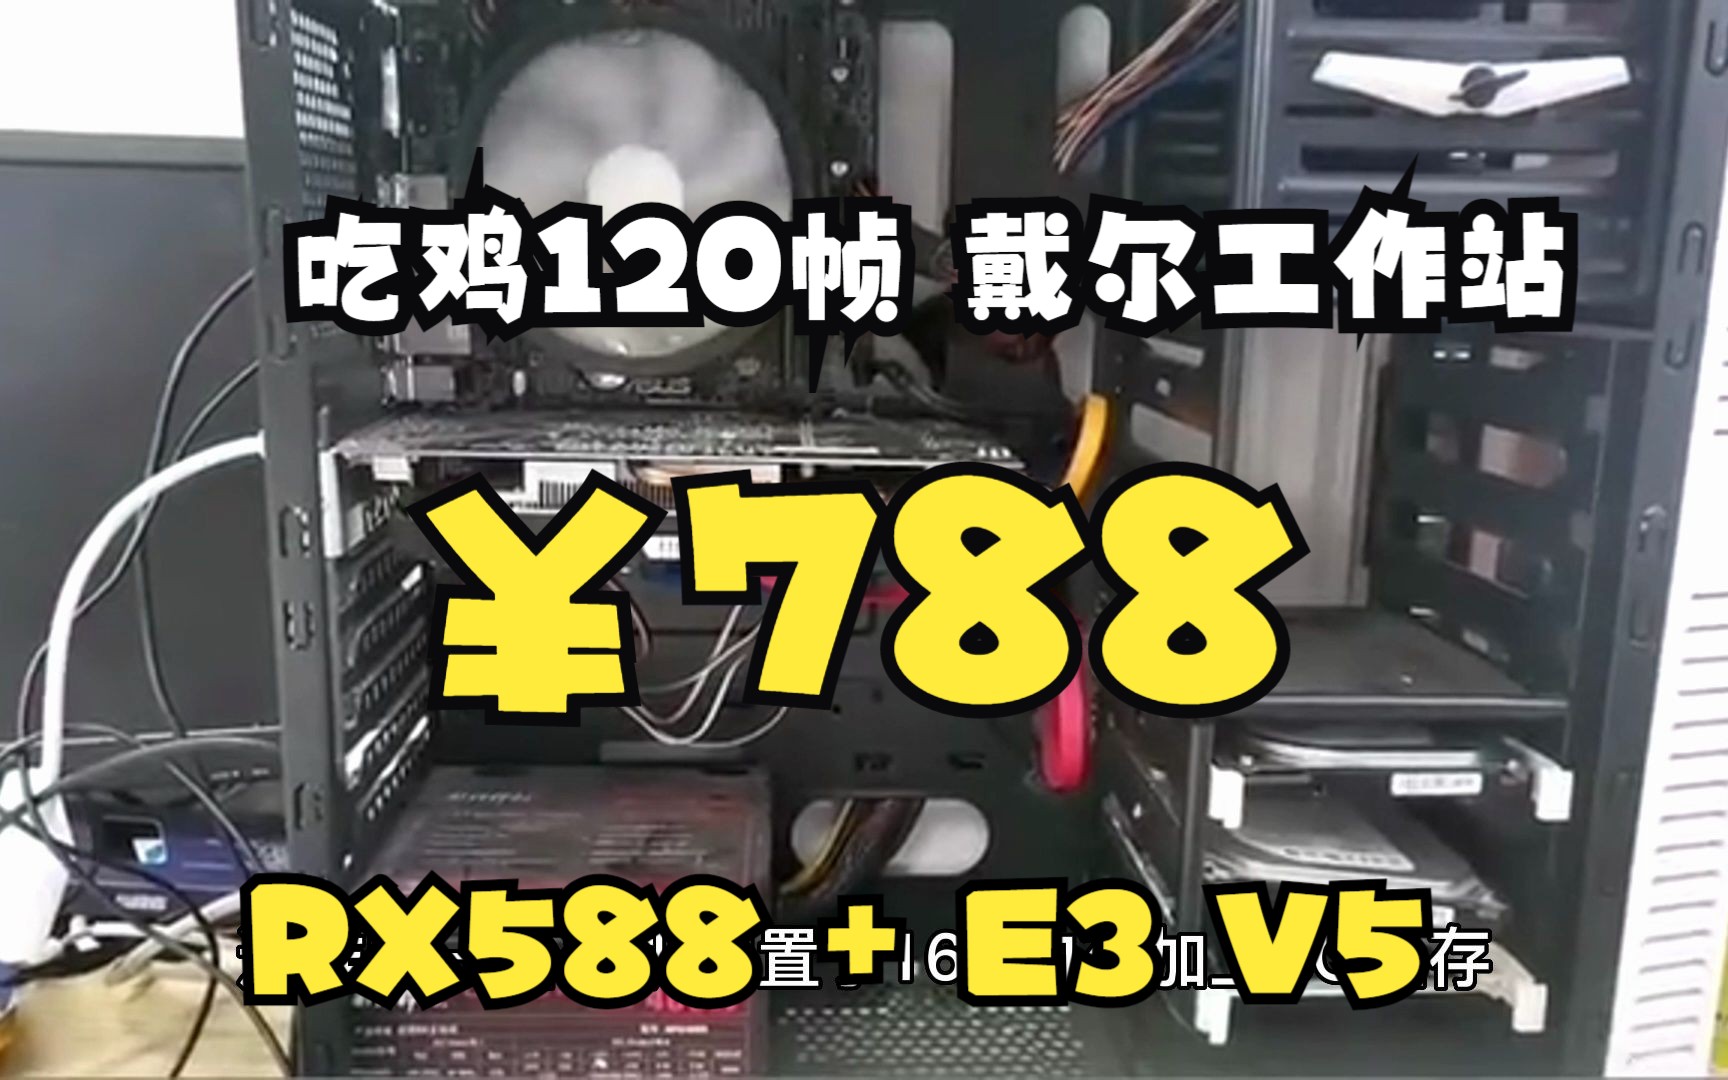 揭秘NVIDIA GT210显卡：低价高性能的秘密  第1张